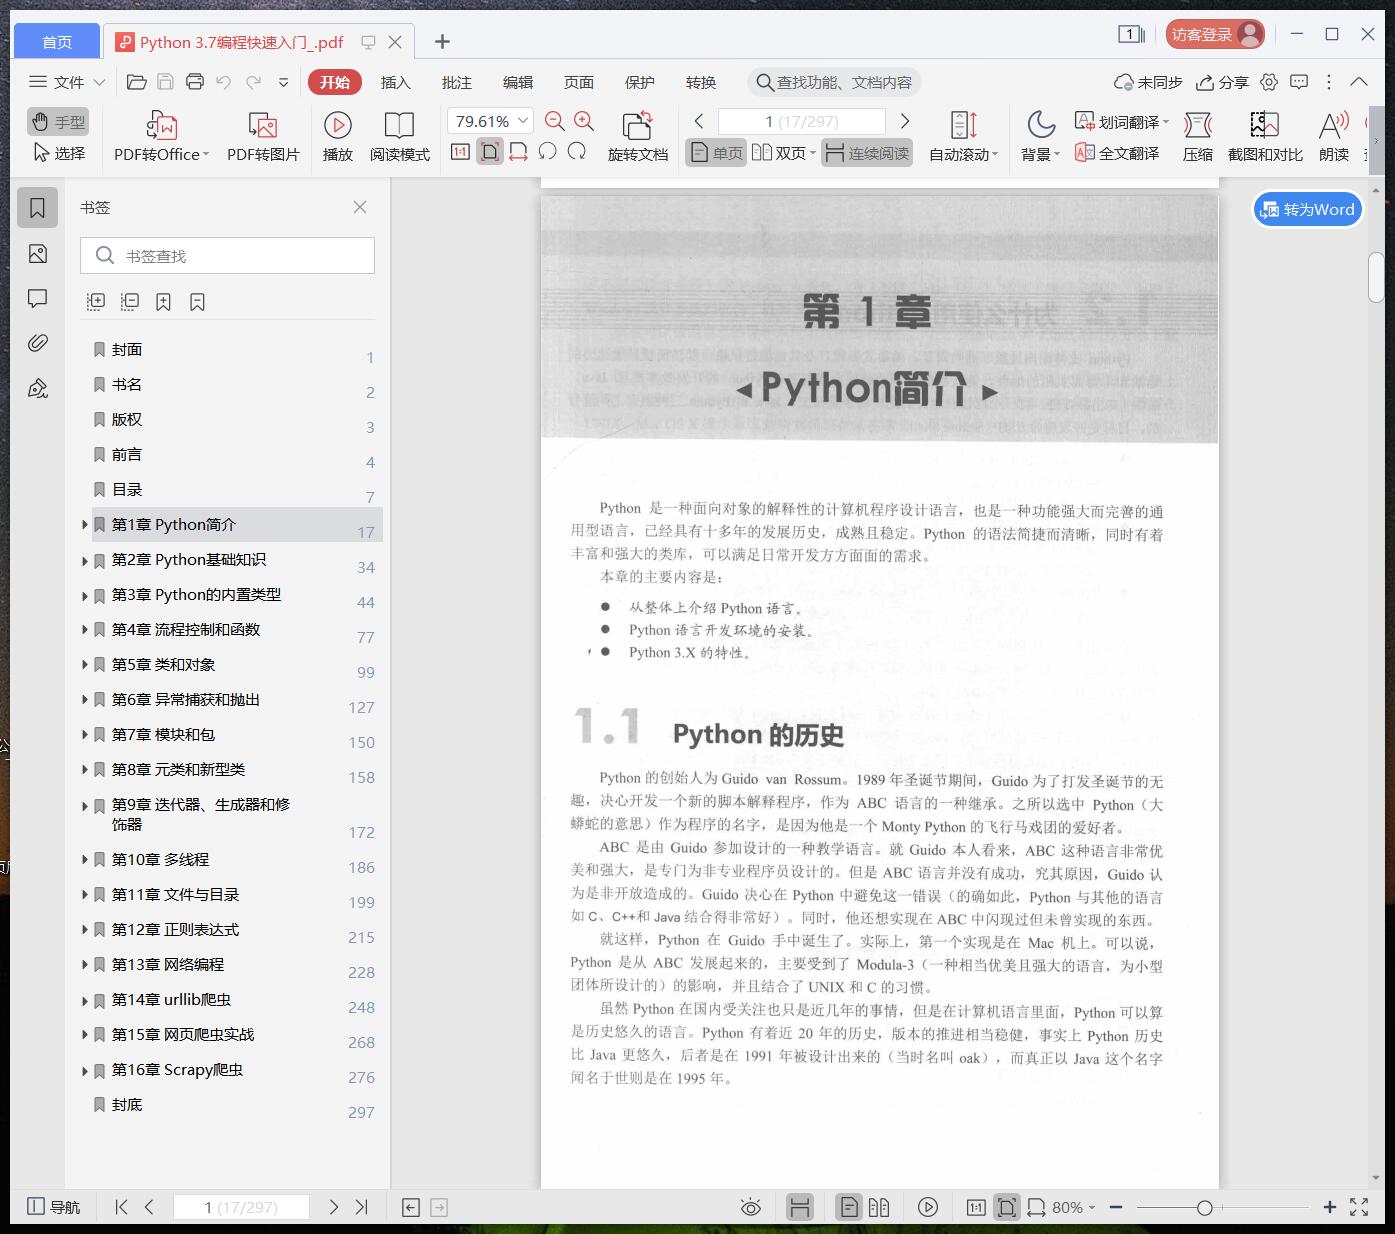 Python教程 3.7编程快速入门pdf电子书籍下载百度网盘